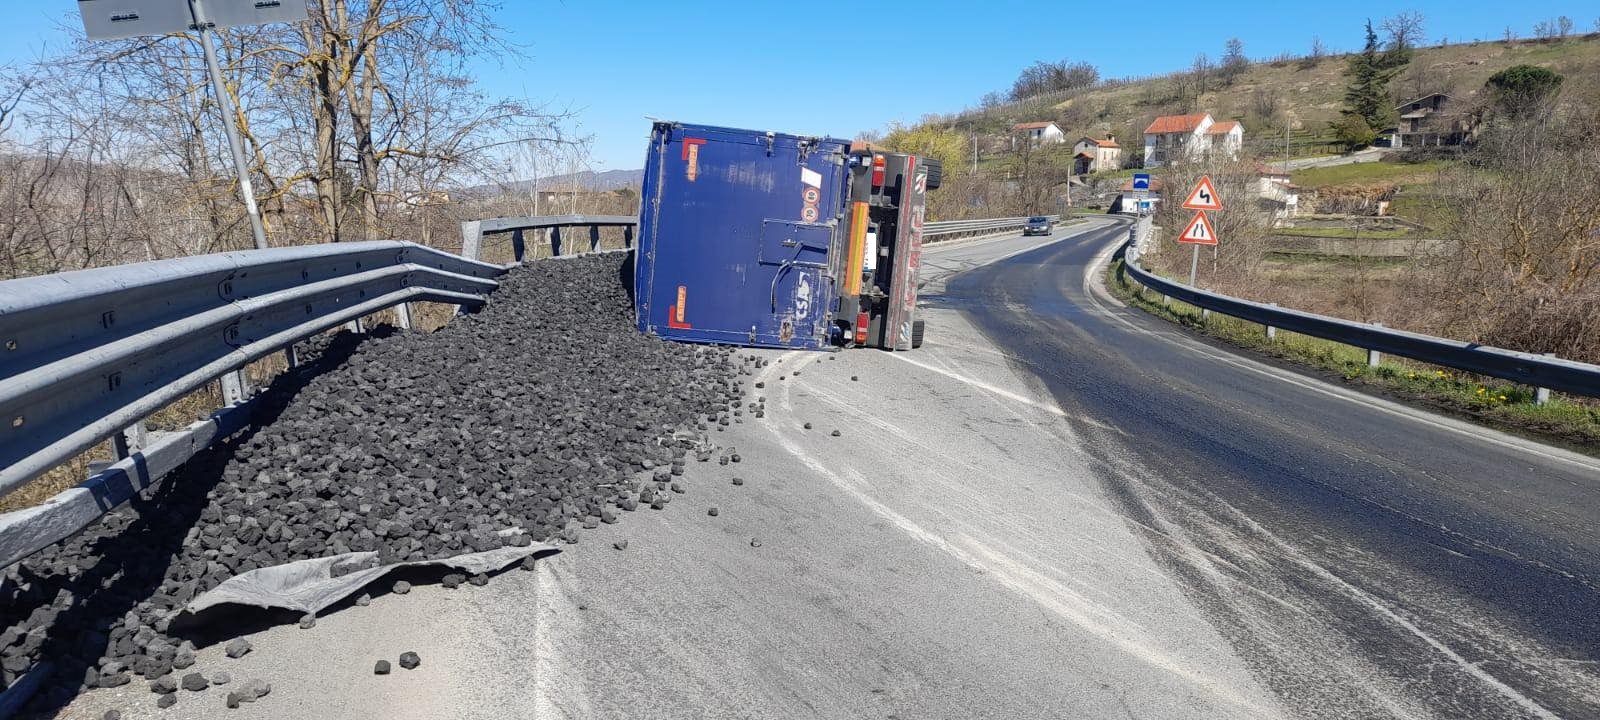 Camion si ribalta a Spigno Monferrato: nessun ferito ma la strada è chiusa